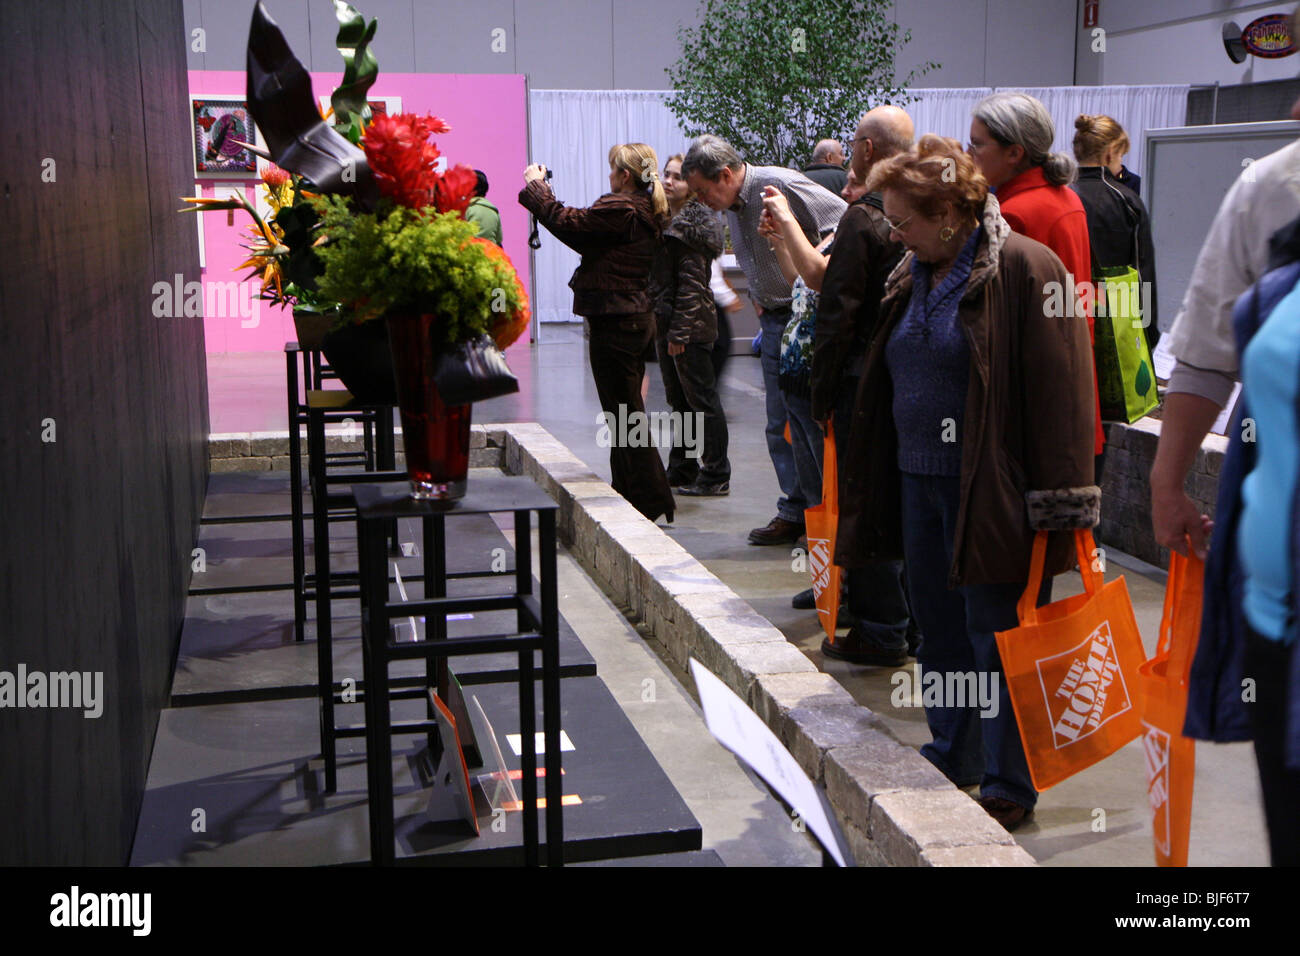 Les spectateurs se rassemblent autour de l'arrangement floral Banque D'Images